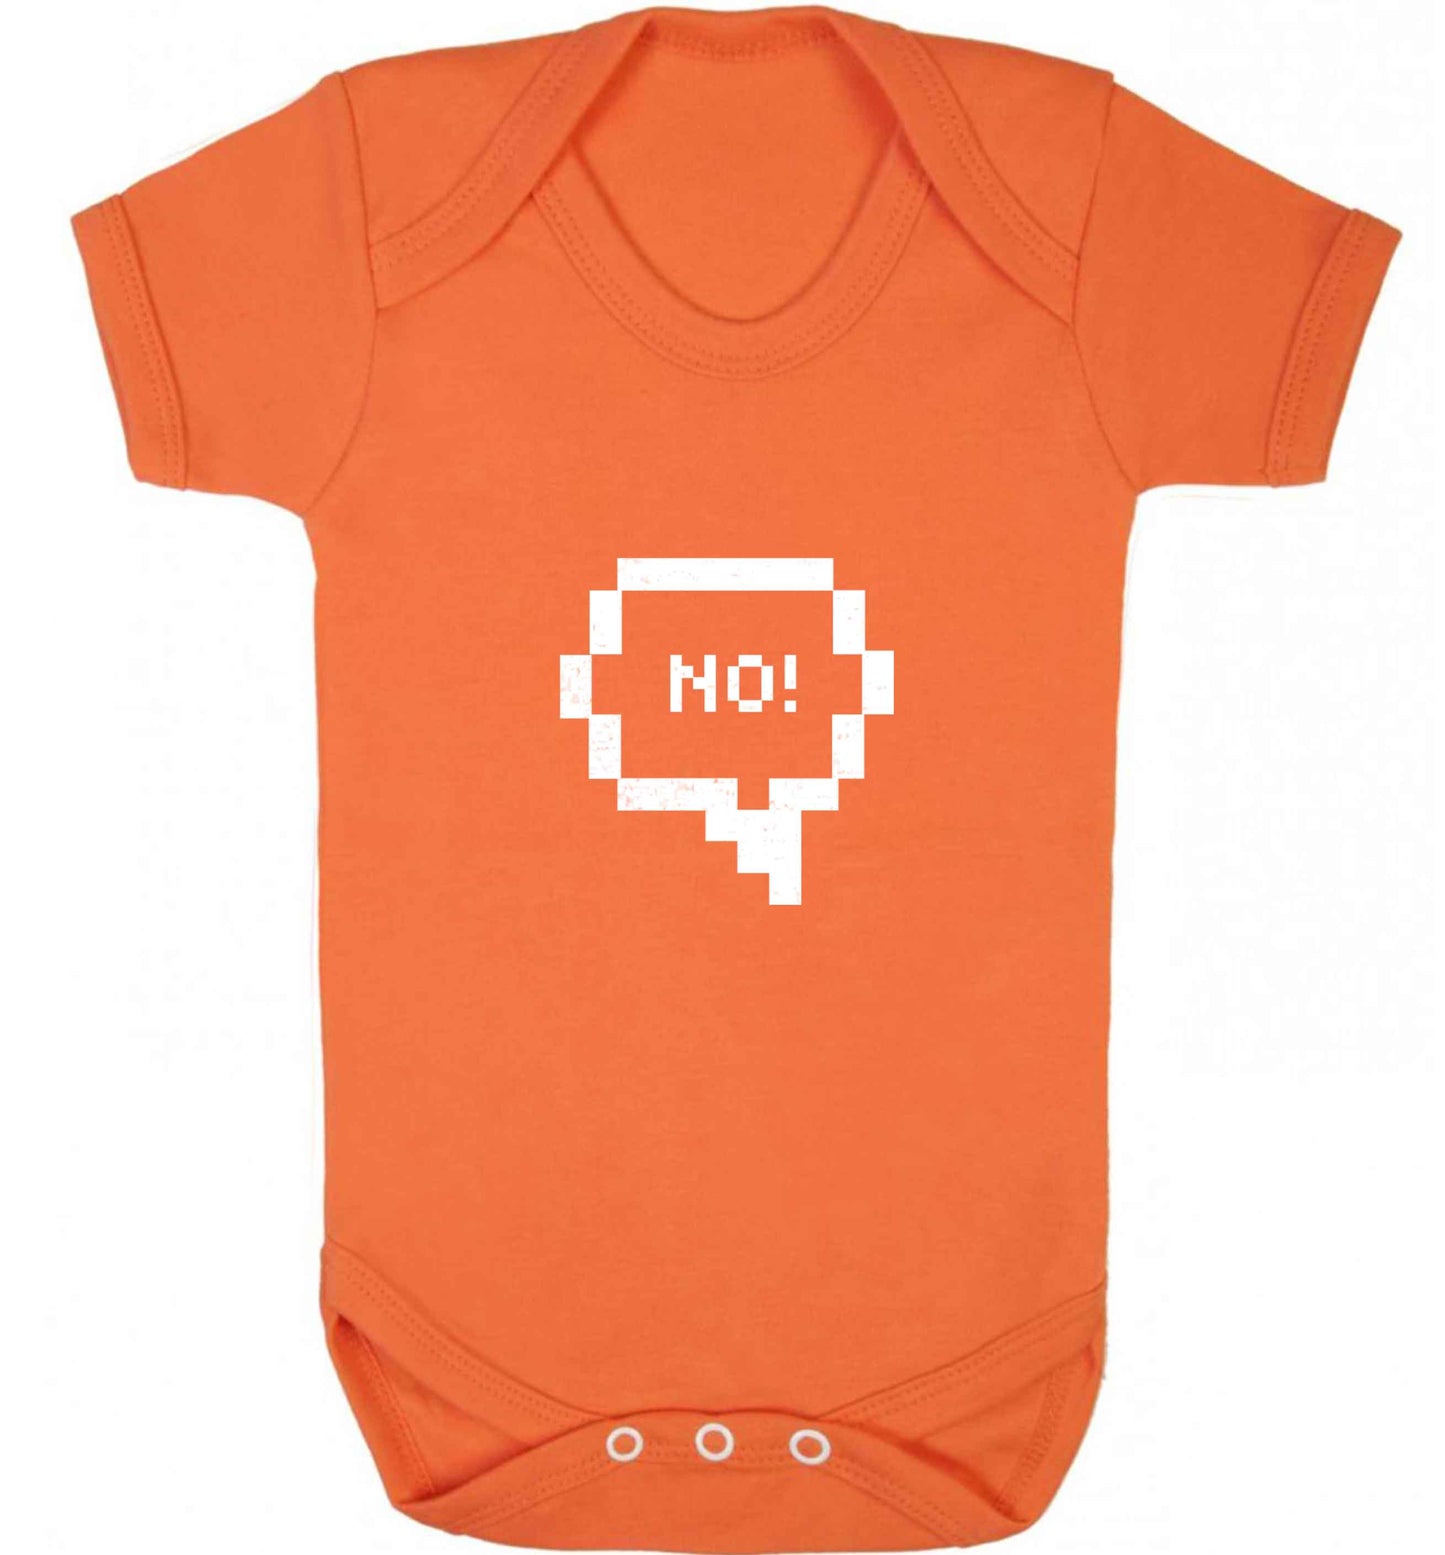 No baby vest orange 18-24 months